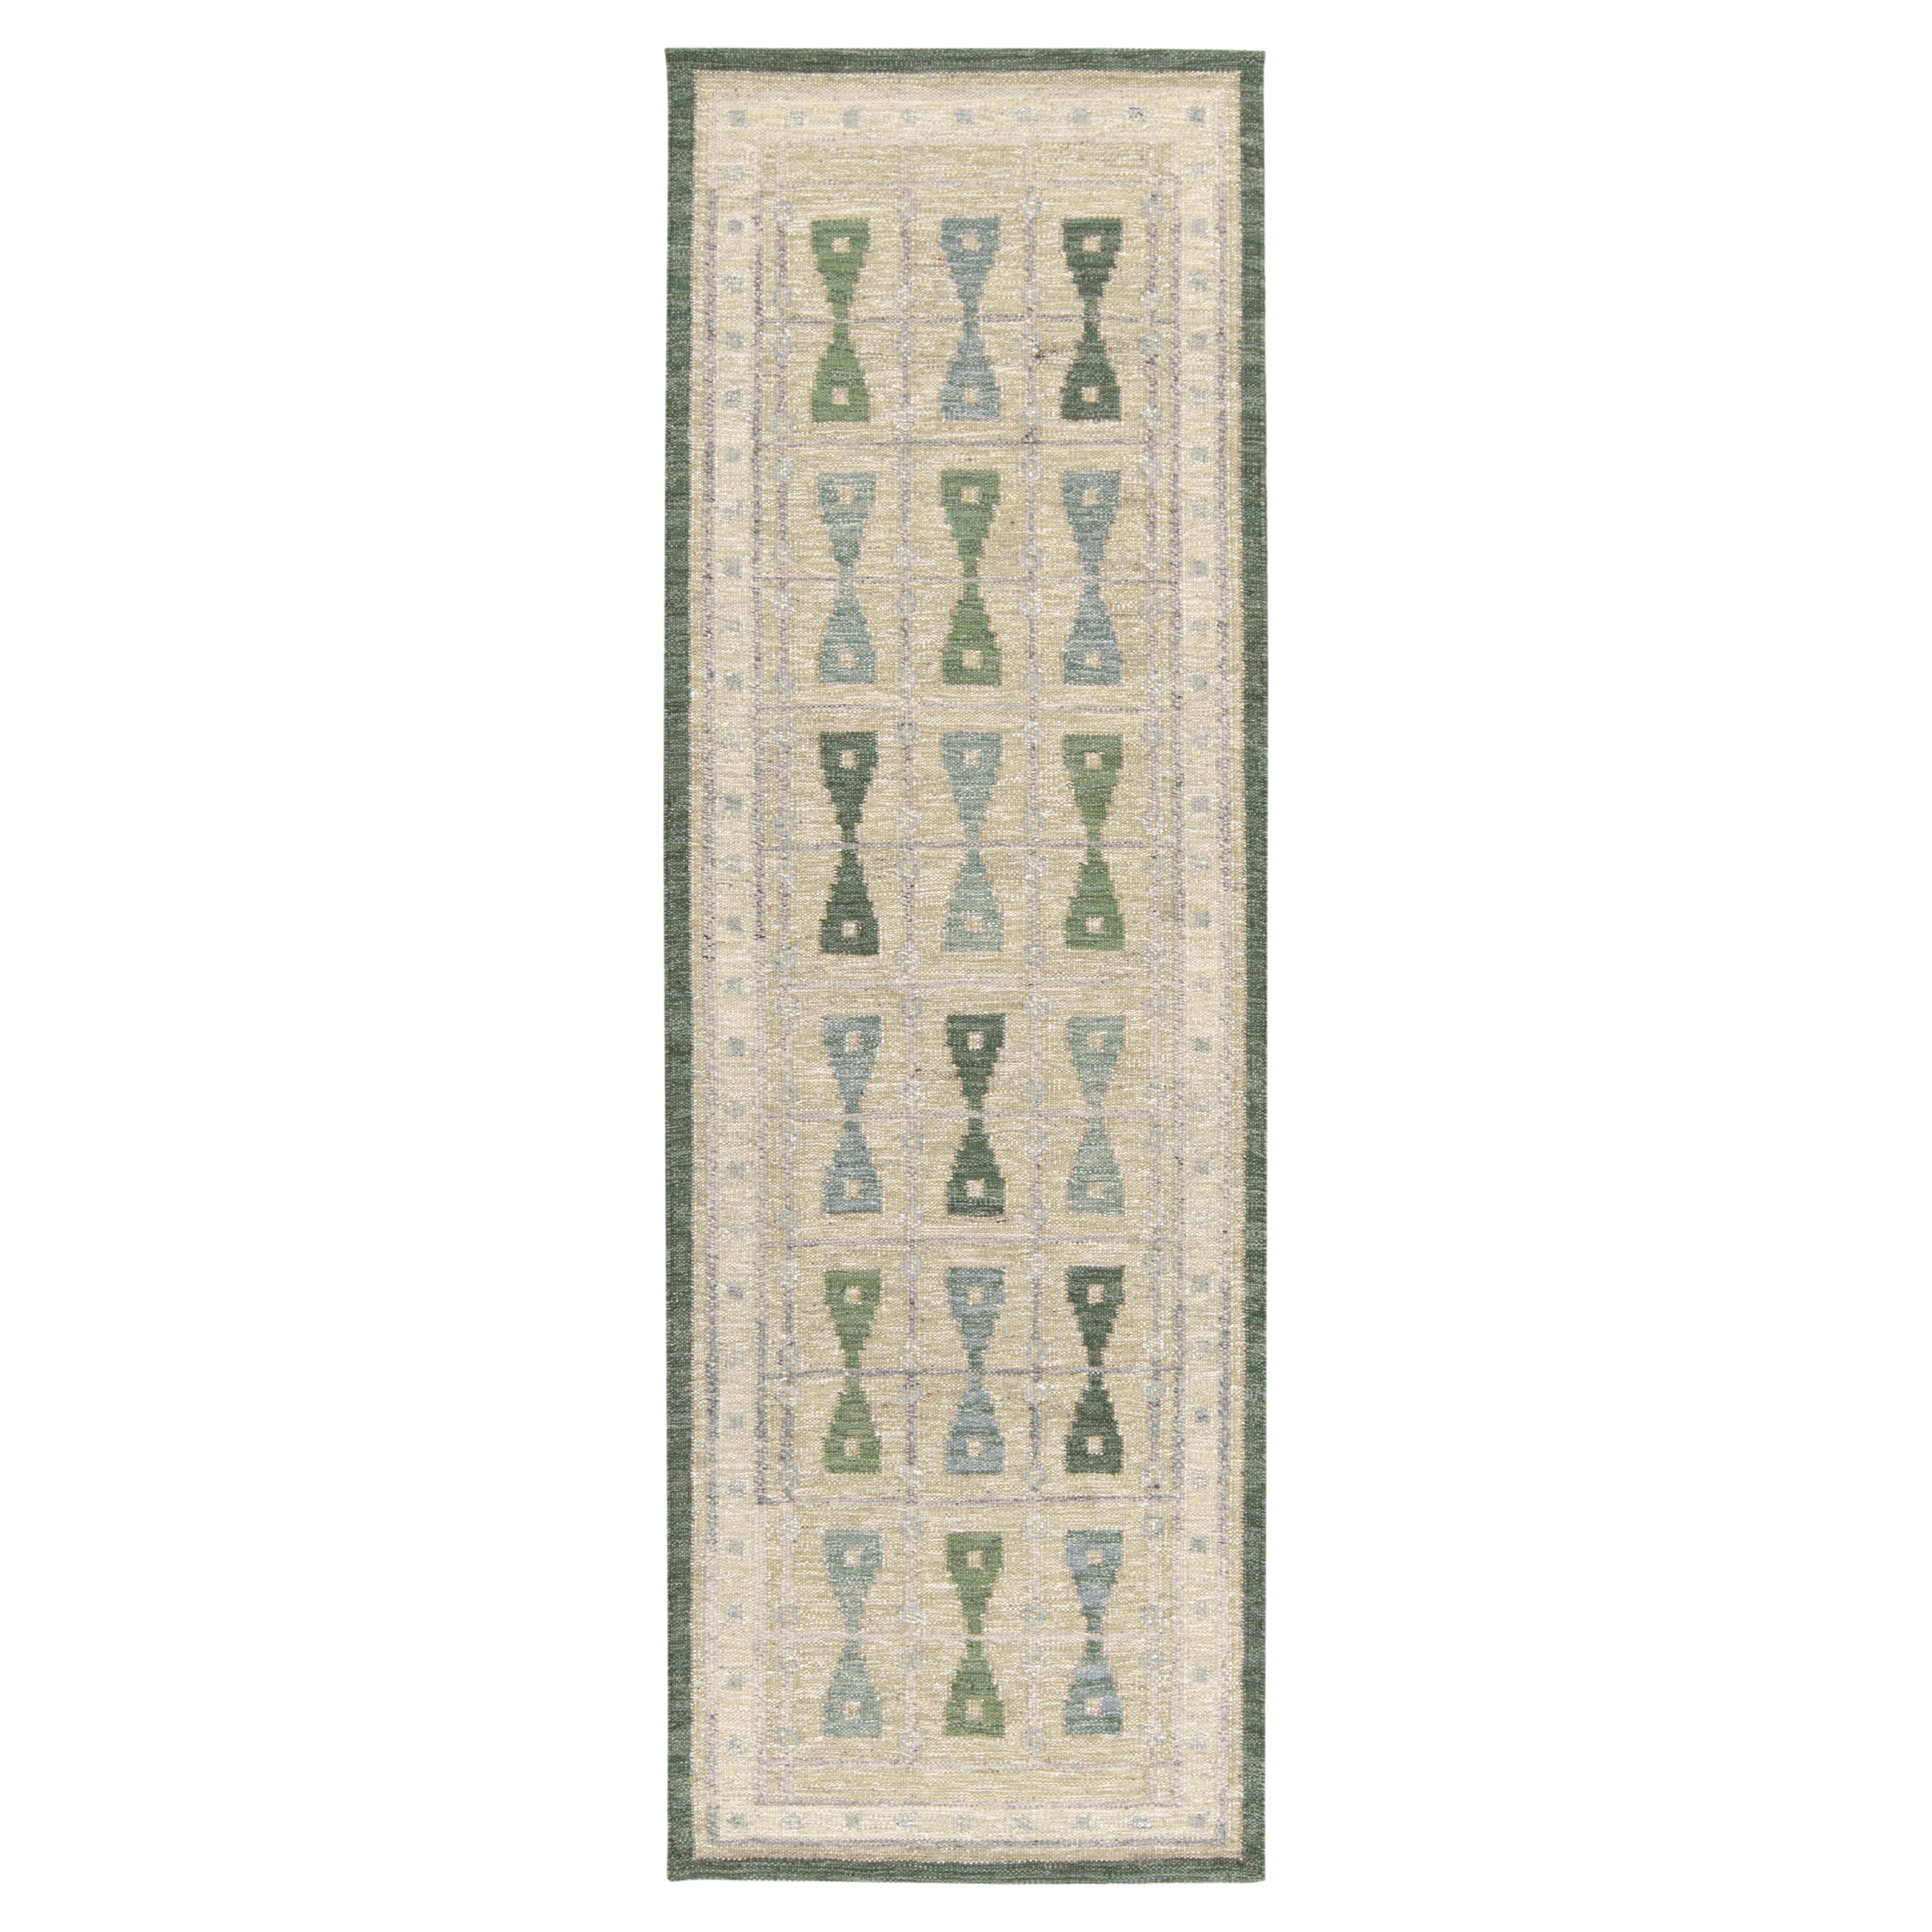 Teppich & Kelim, skandinavischer Kelim-Stil, maßgefertigter Läufer, grünes, blaues Muster